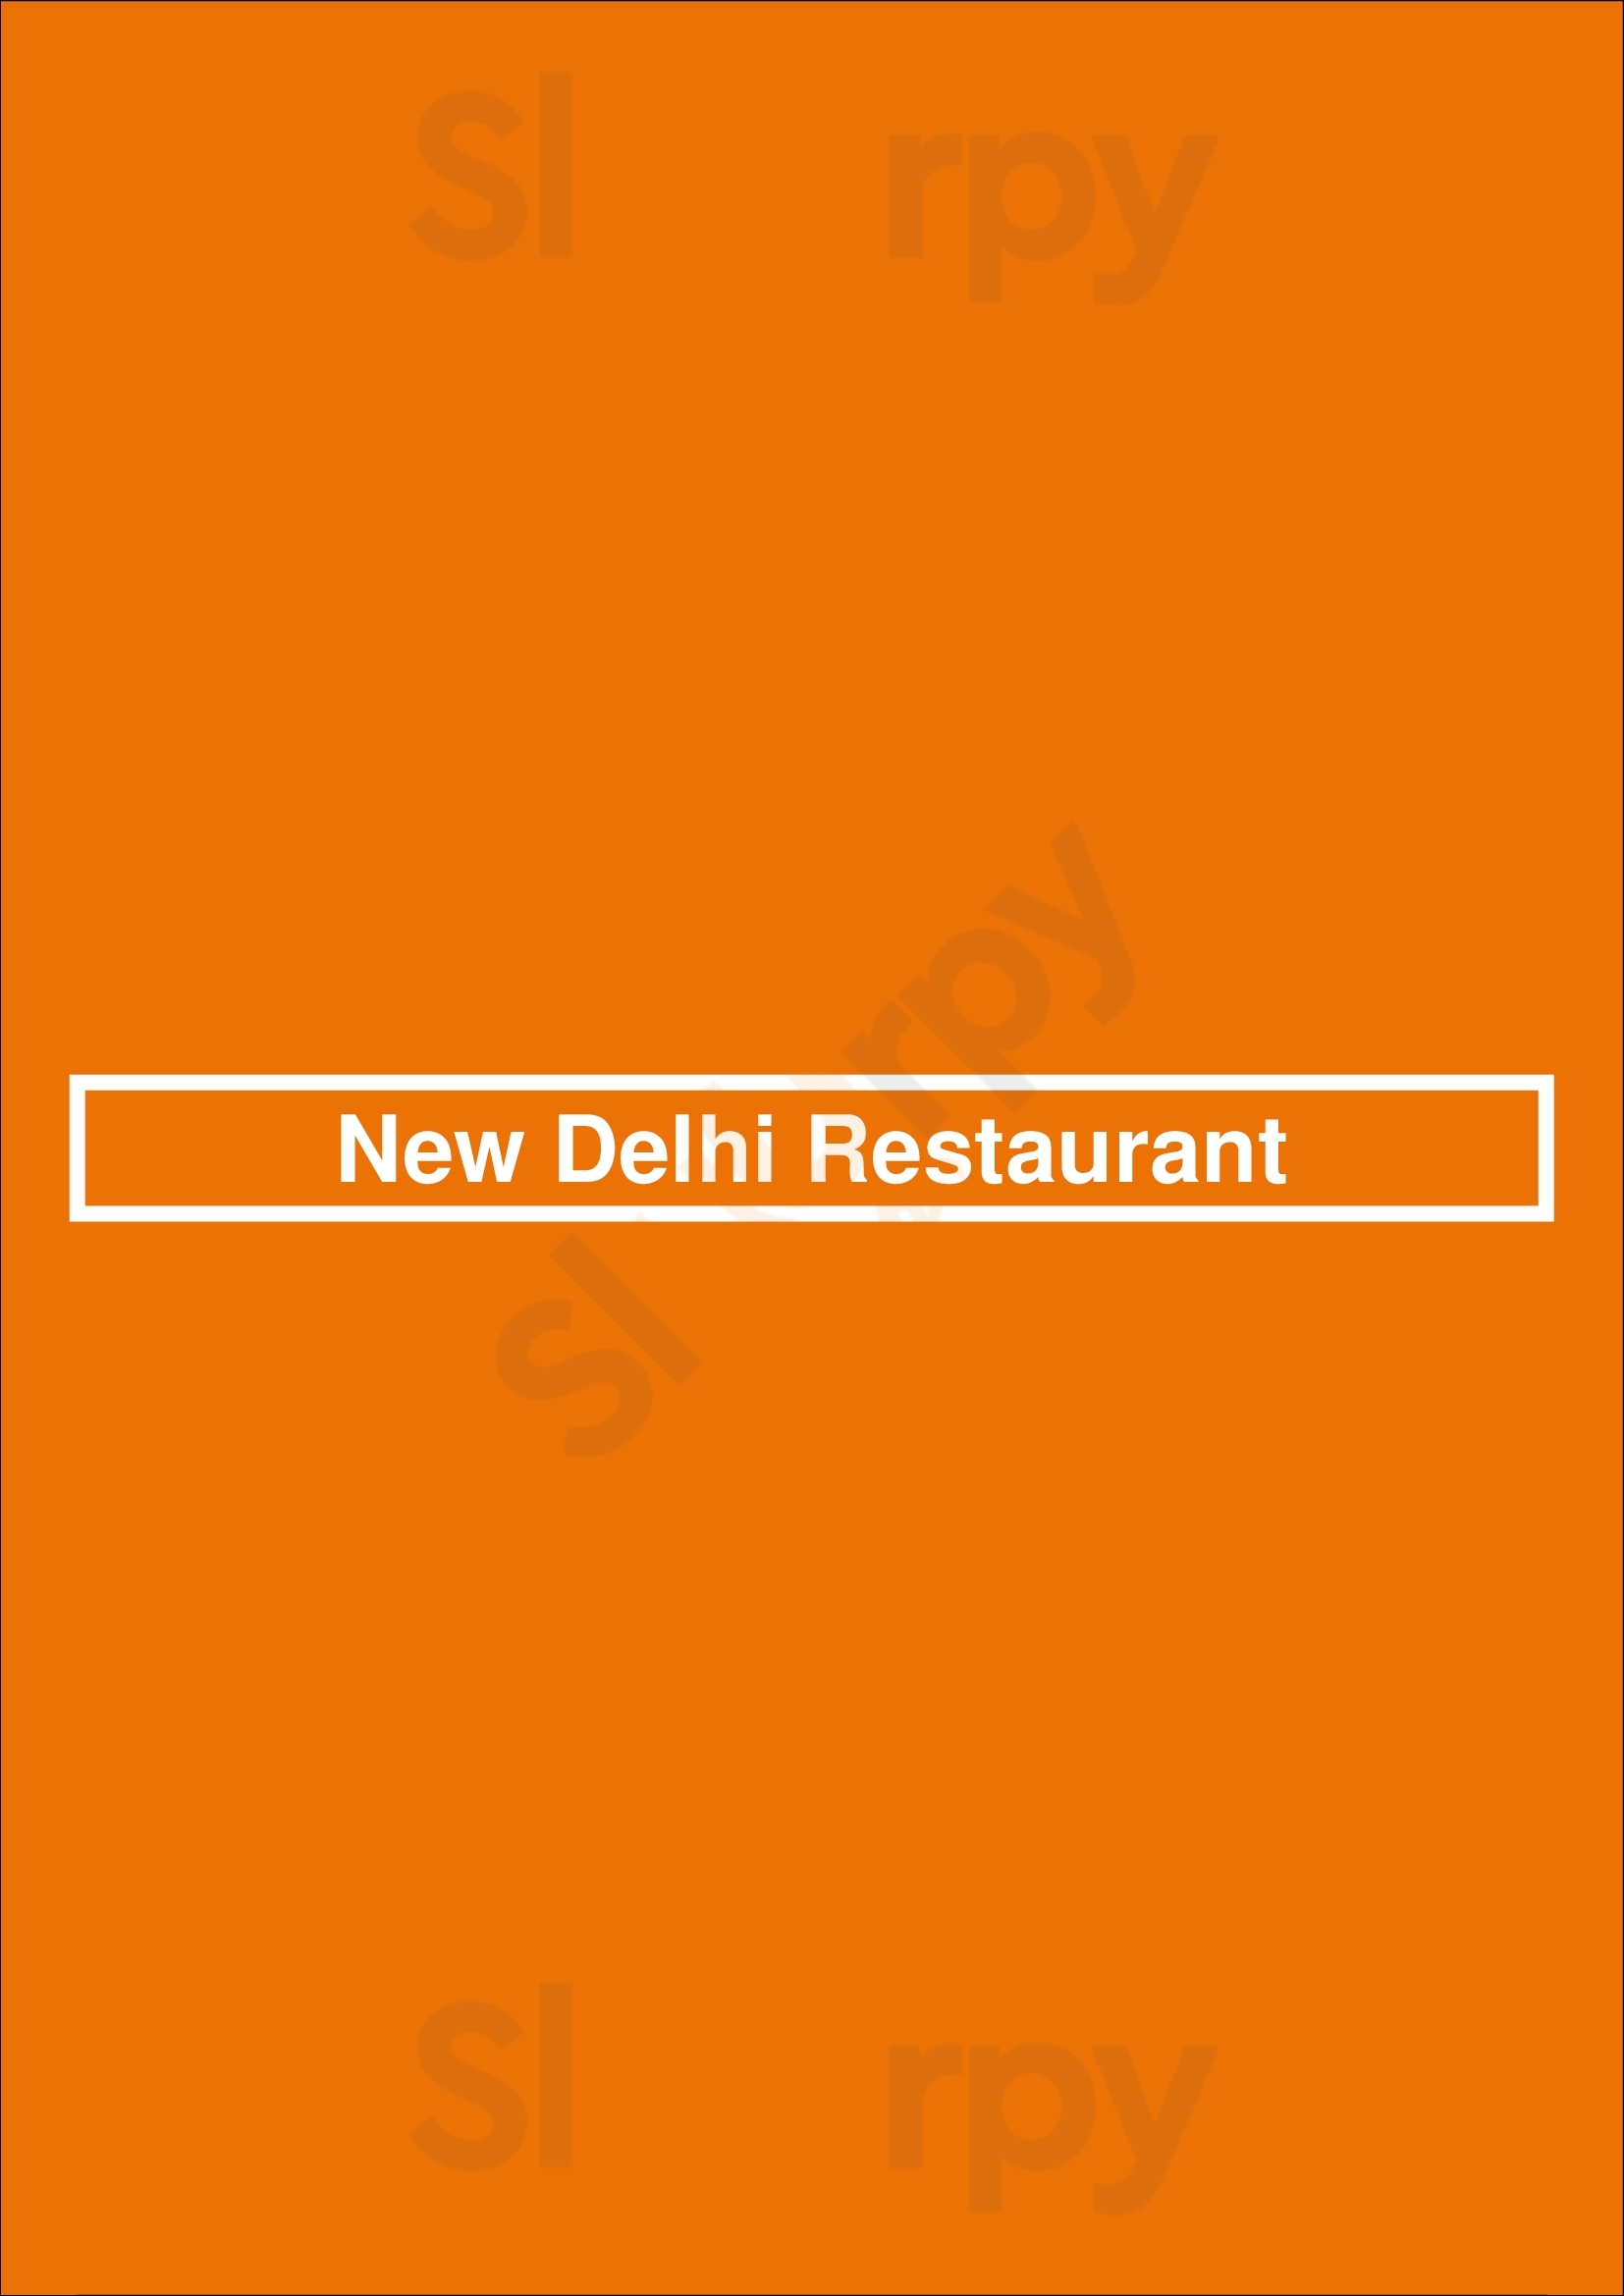 New Delhi Restaurant Lyon Menu - 1